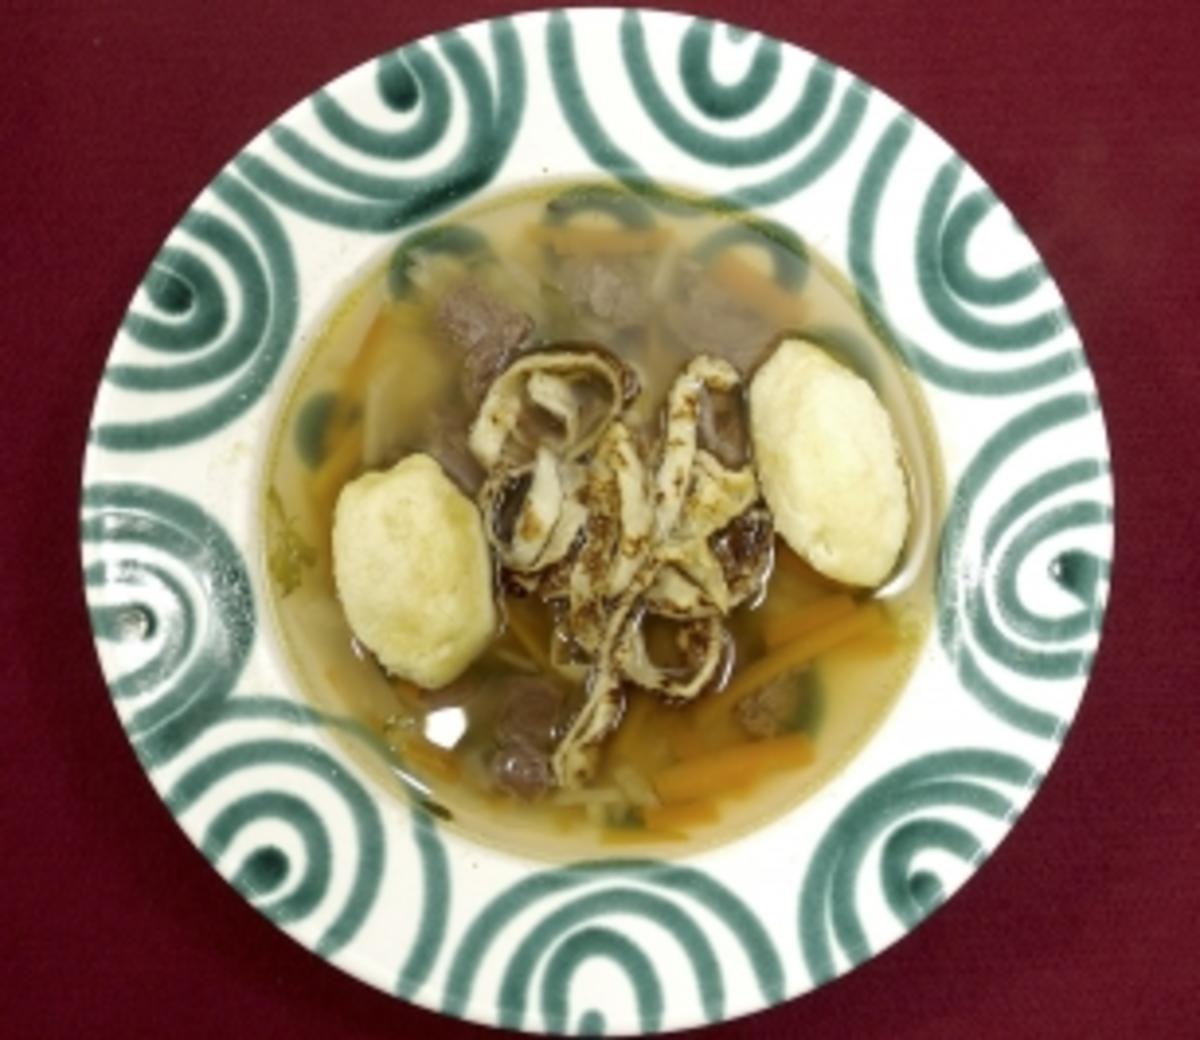 Suppe mit Frittaten und Grießnockerl (Andrea Spatzek) - Rezept